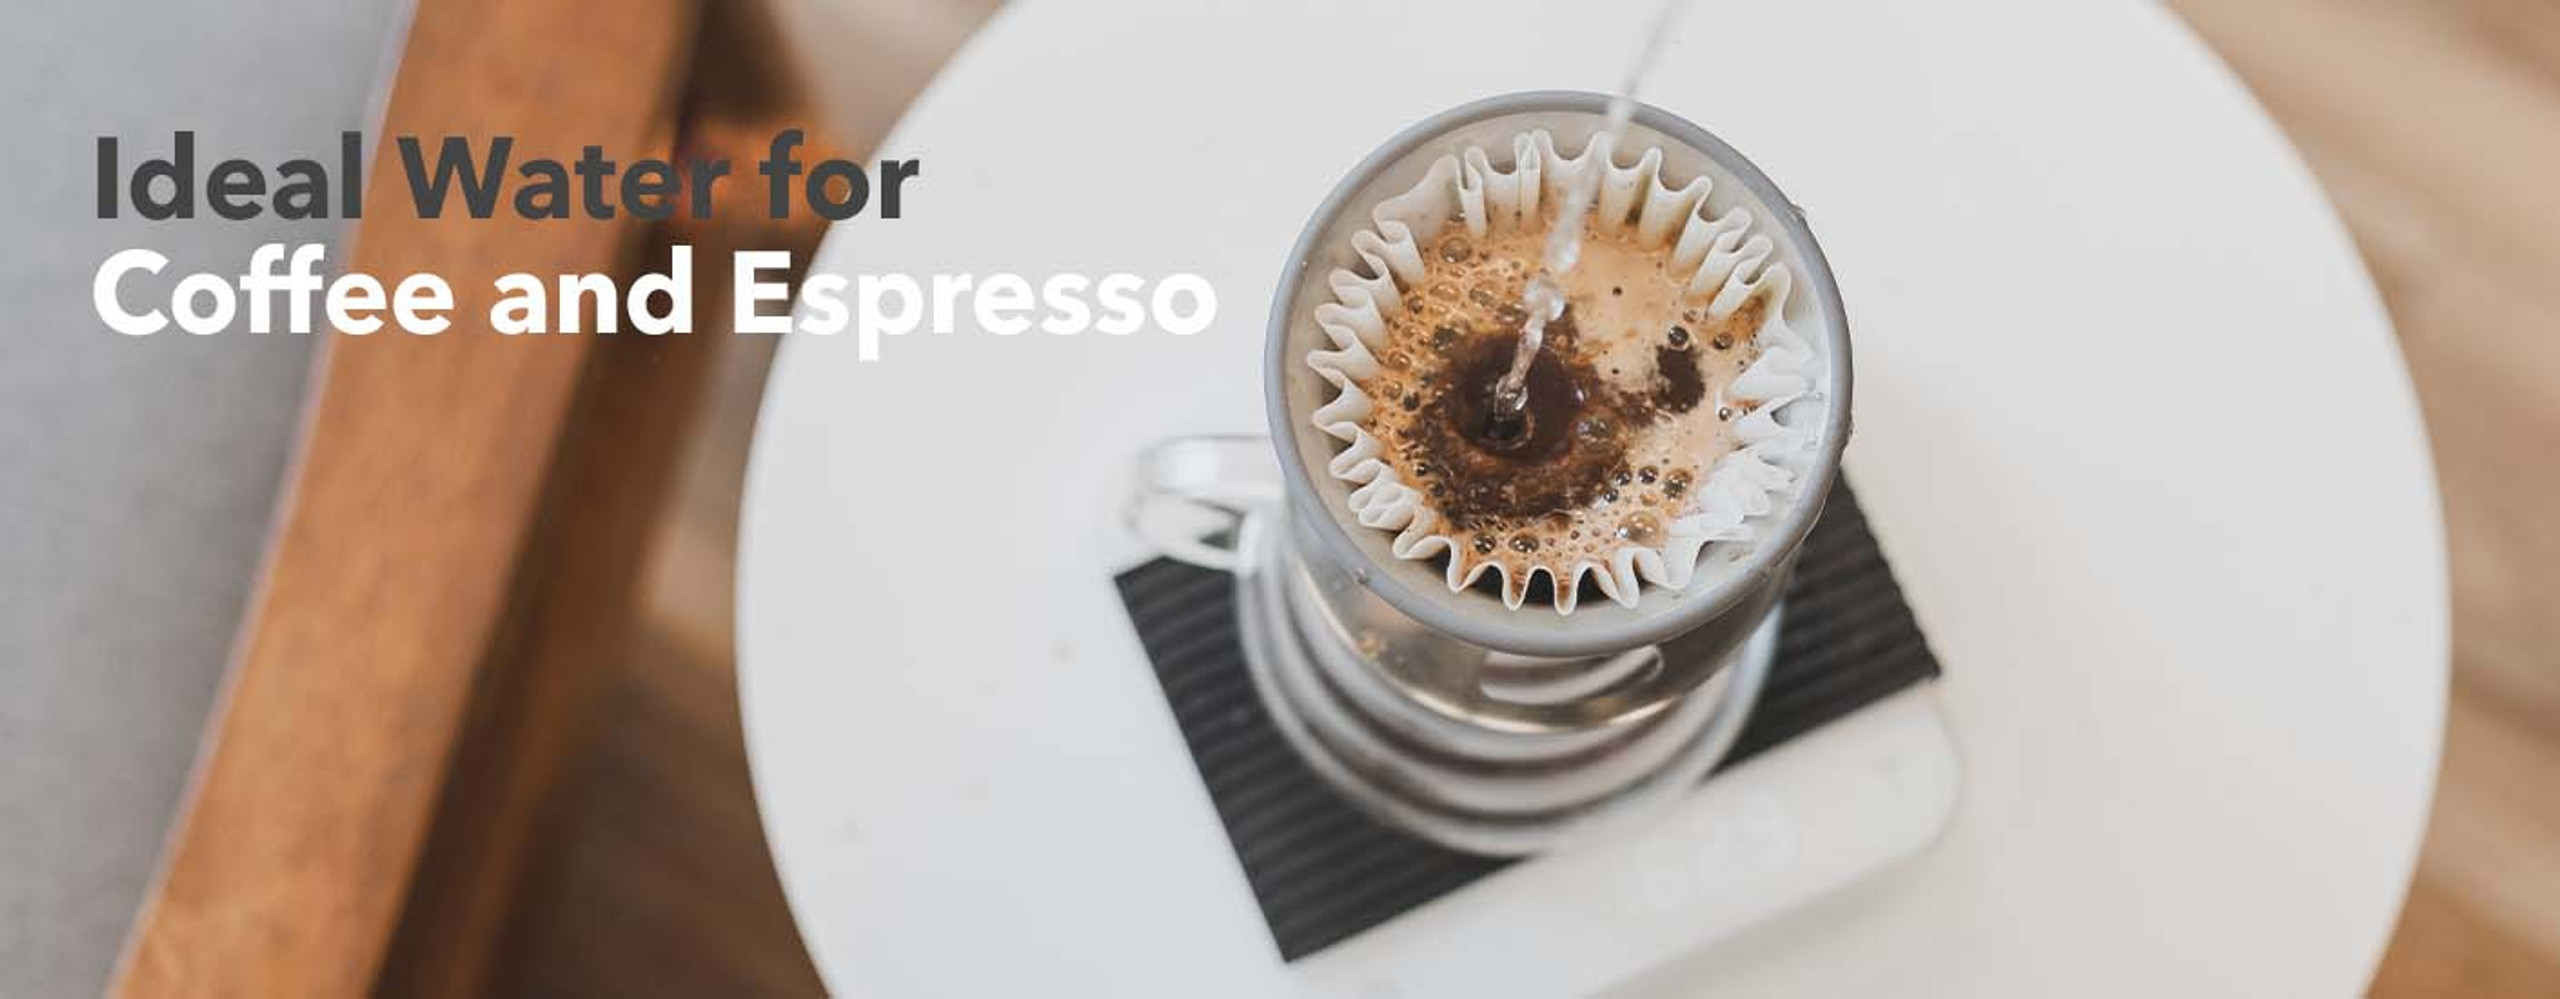 Water for Filter Coffee vs. Espresso